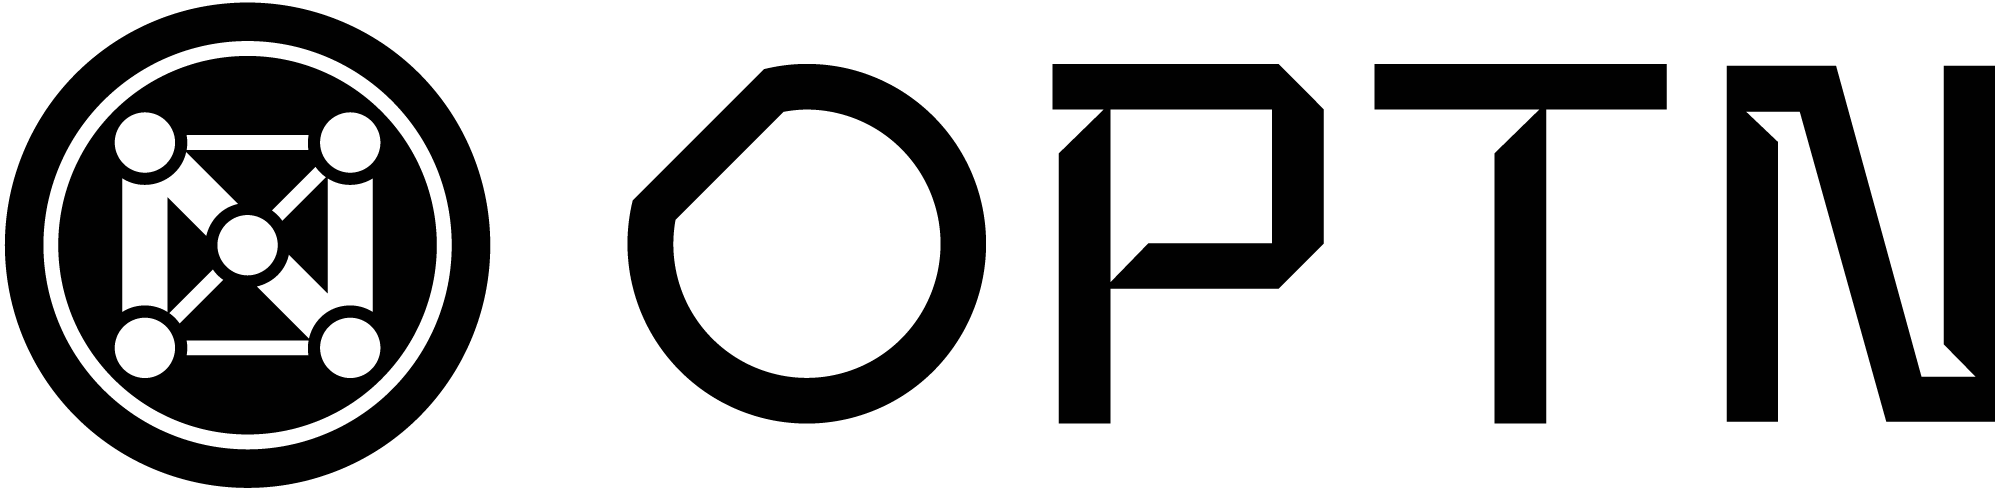 OPTN Extender logo